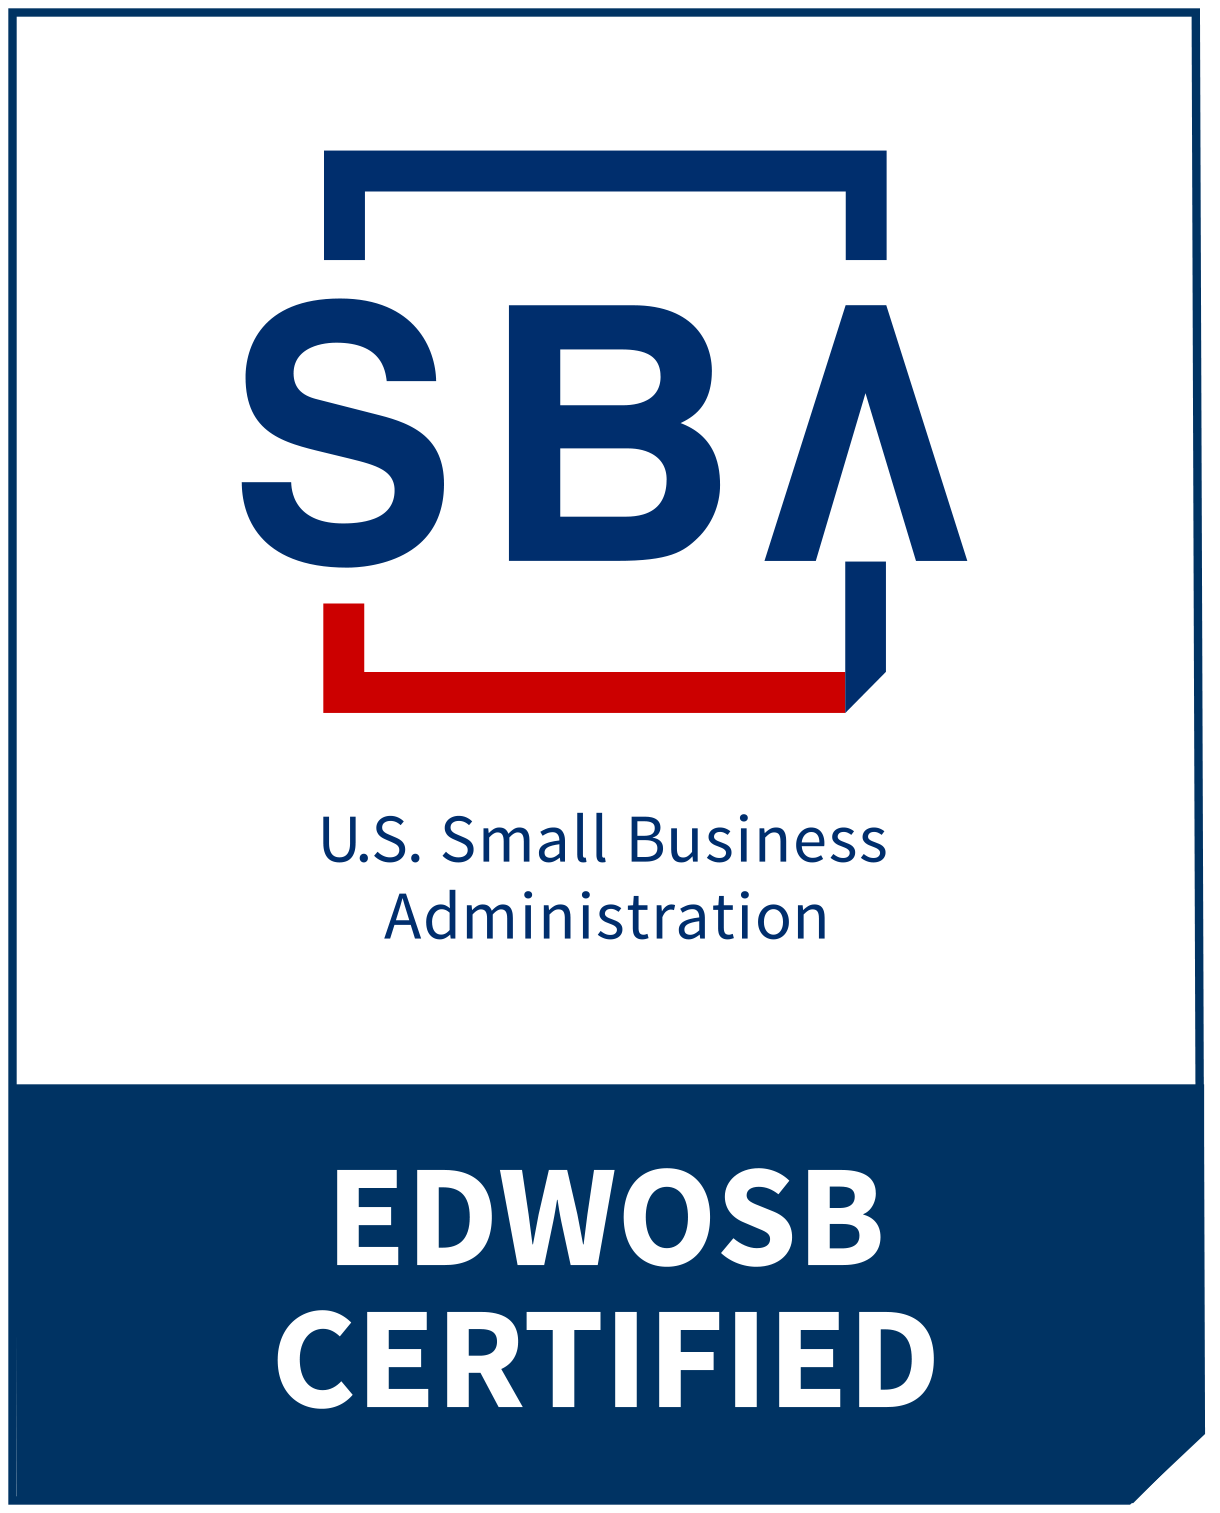 EDWOSB Certified